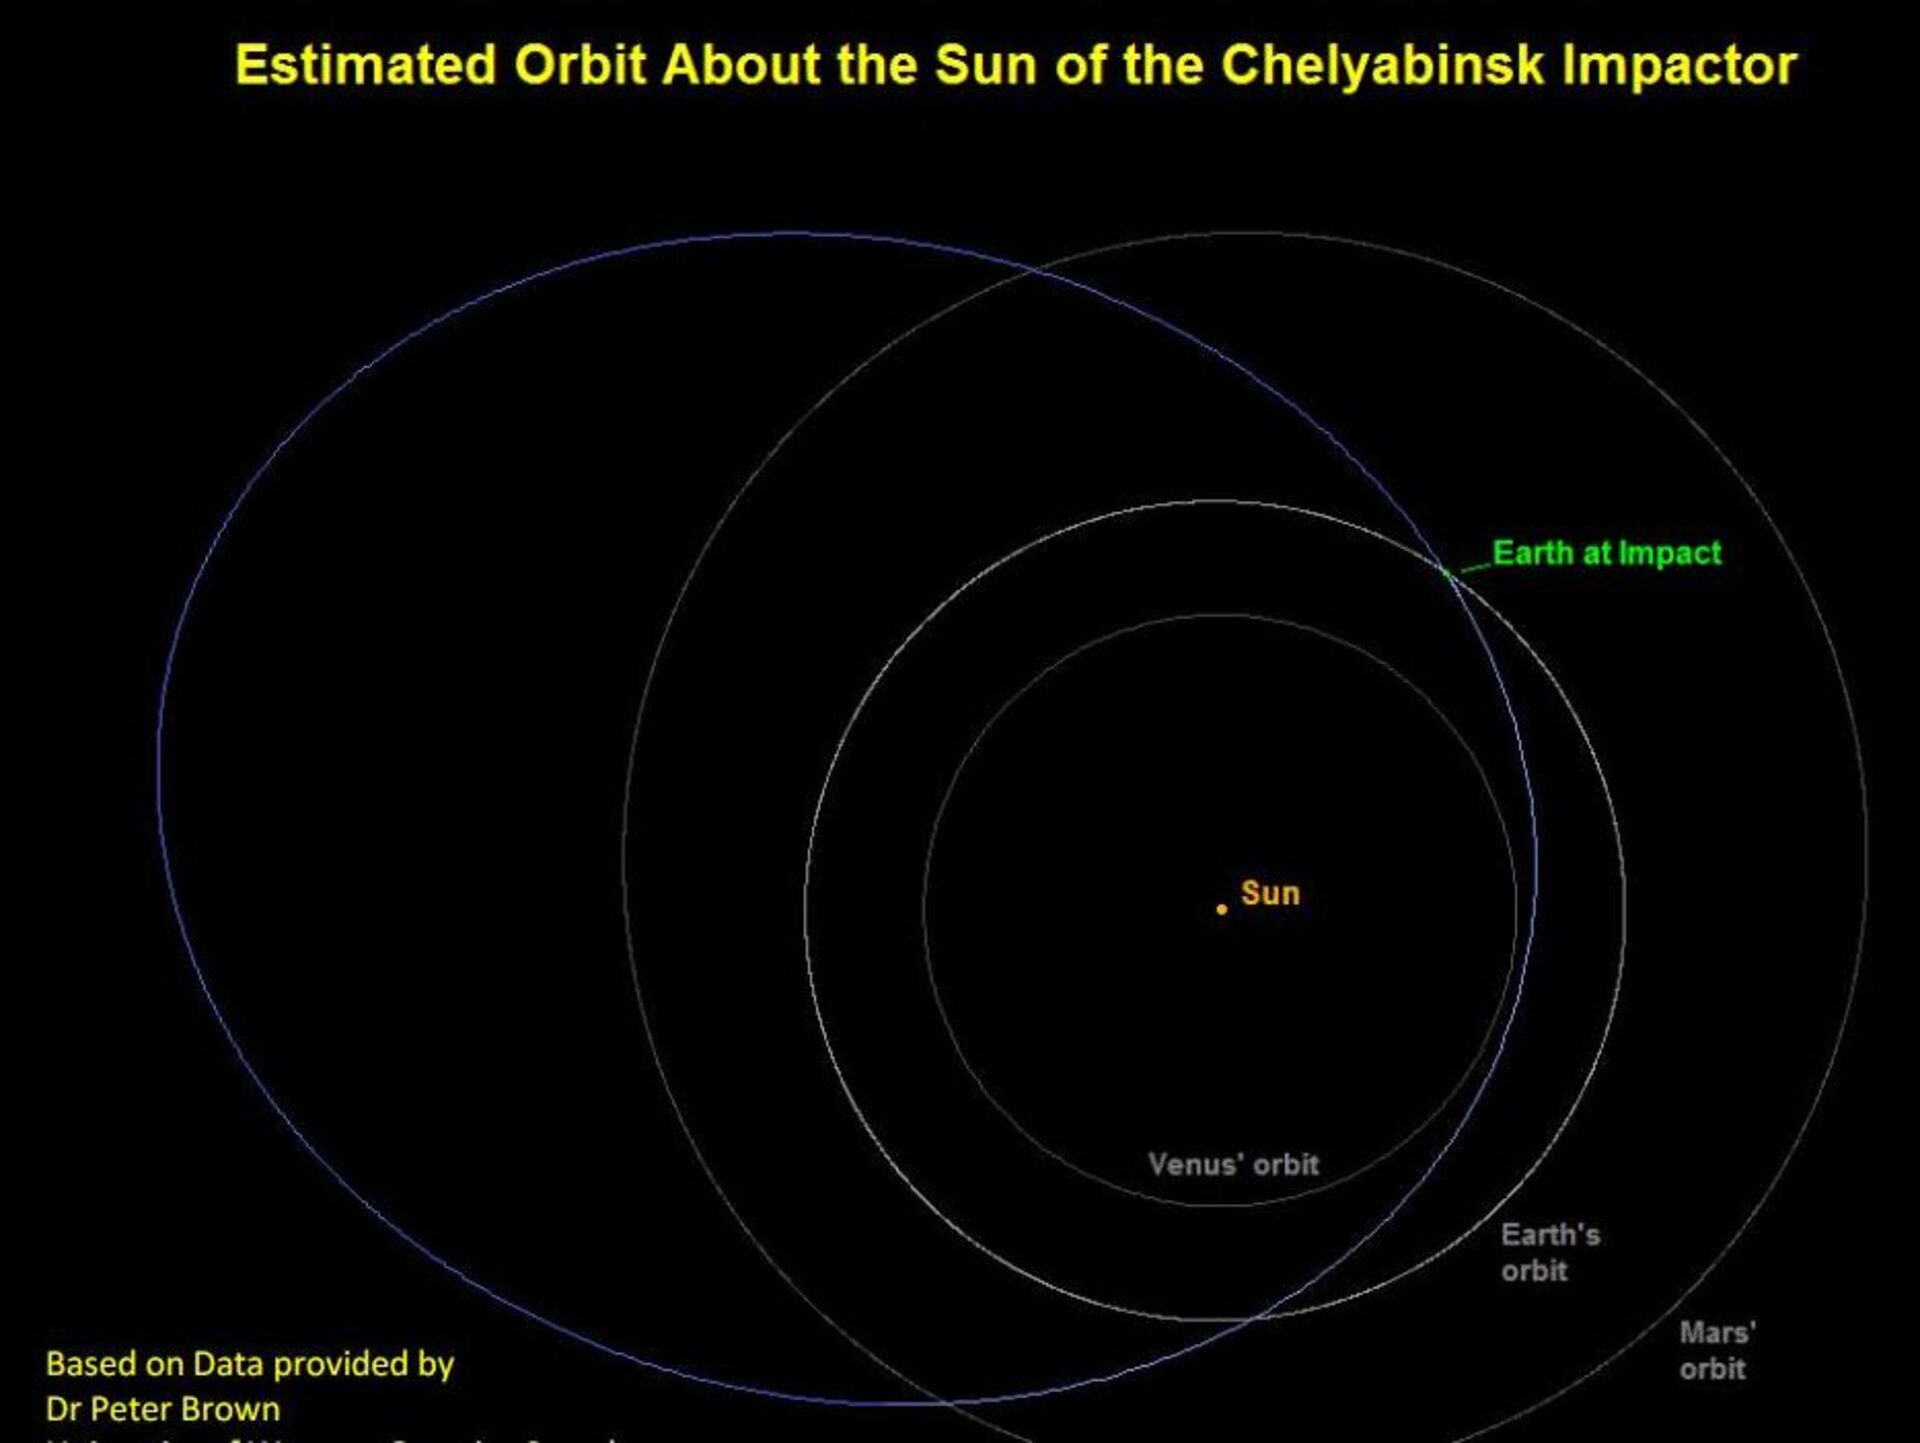 Orbit around Sun